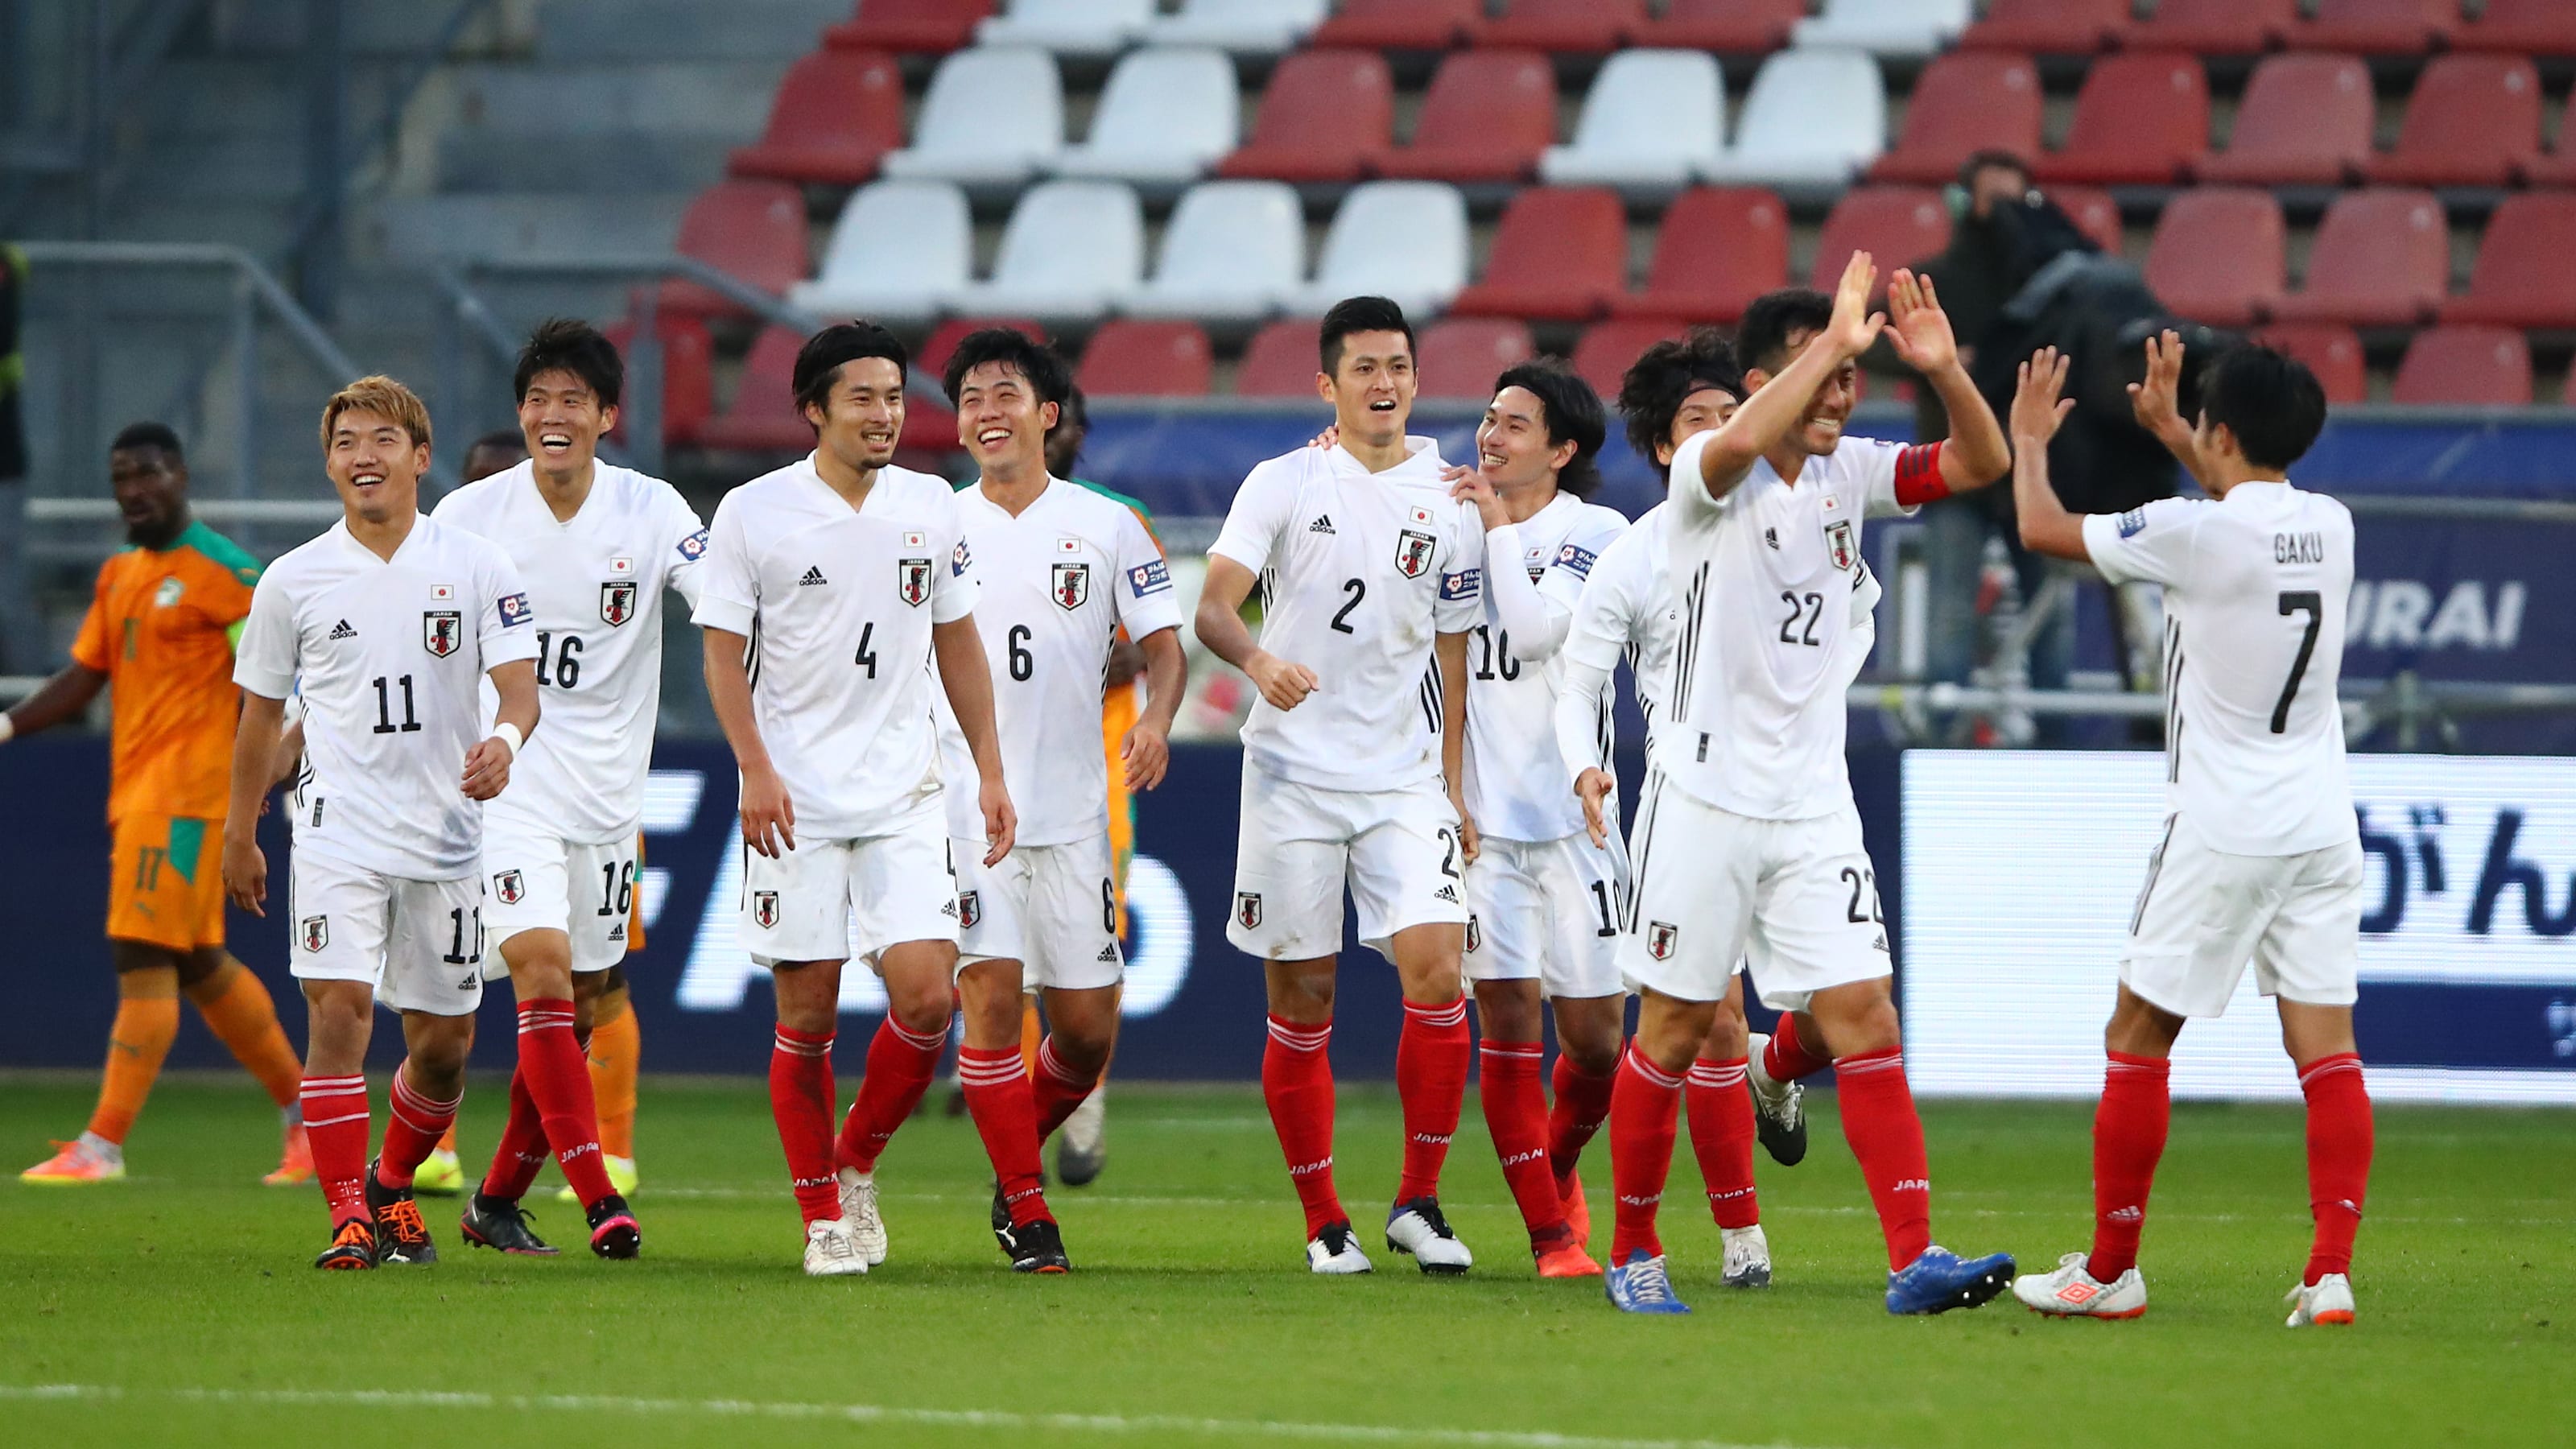 サッカー 日本代表がパナマ代表と11月13日にオーストリアで対戦 森保監督 粘り強さを持つチームという印象